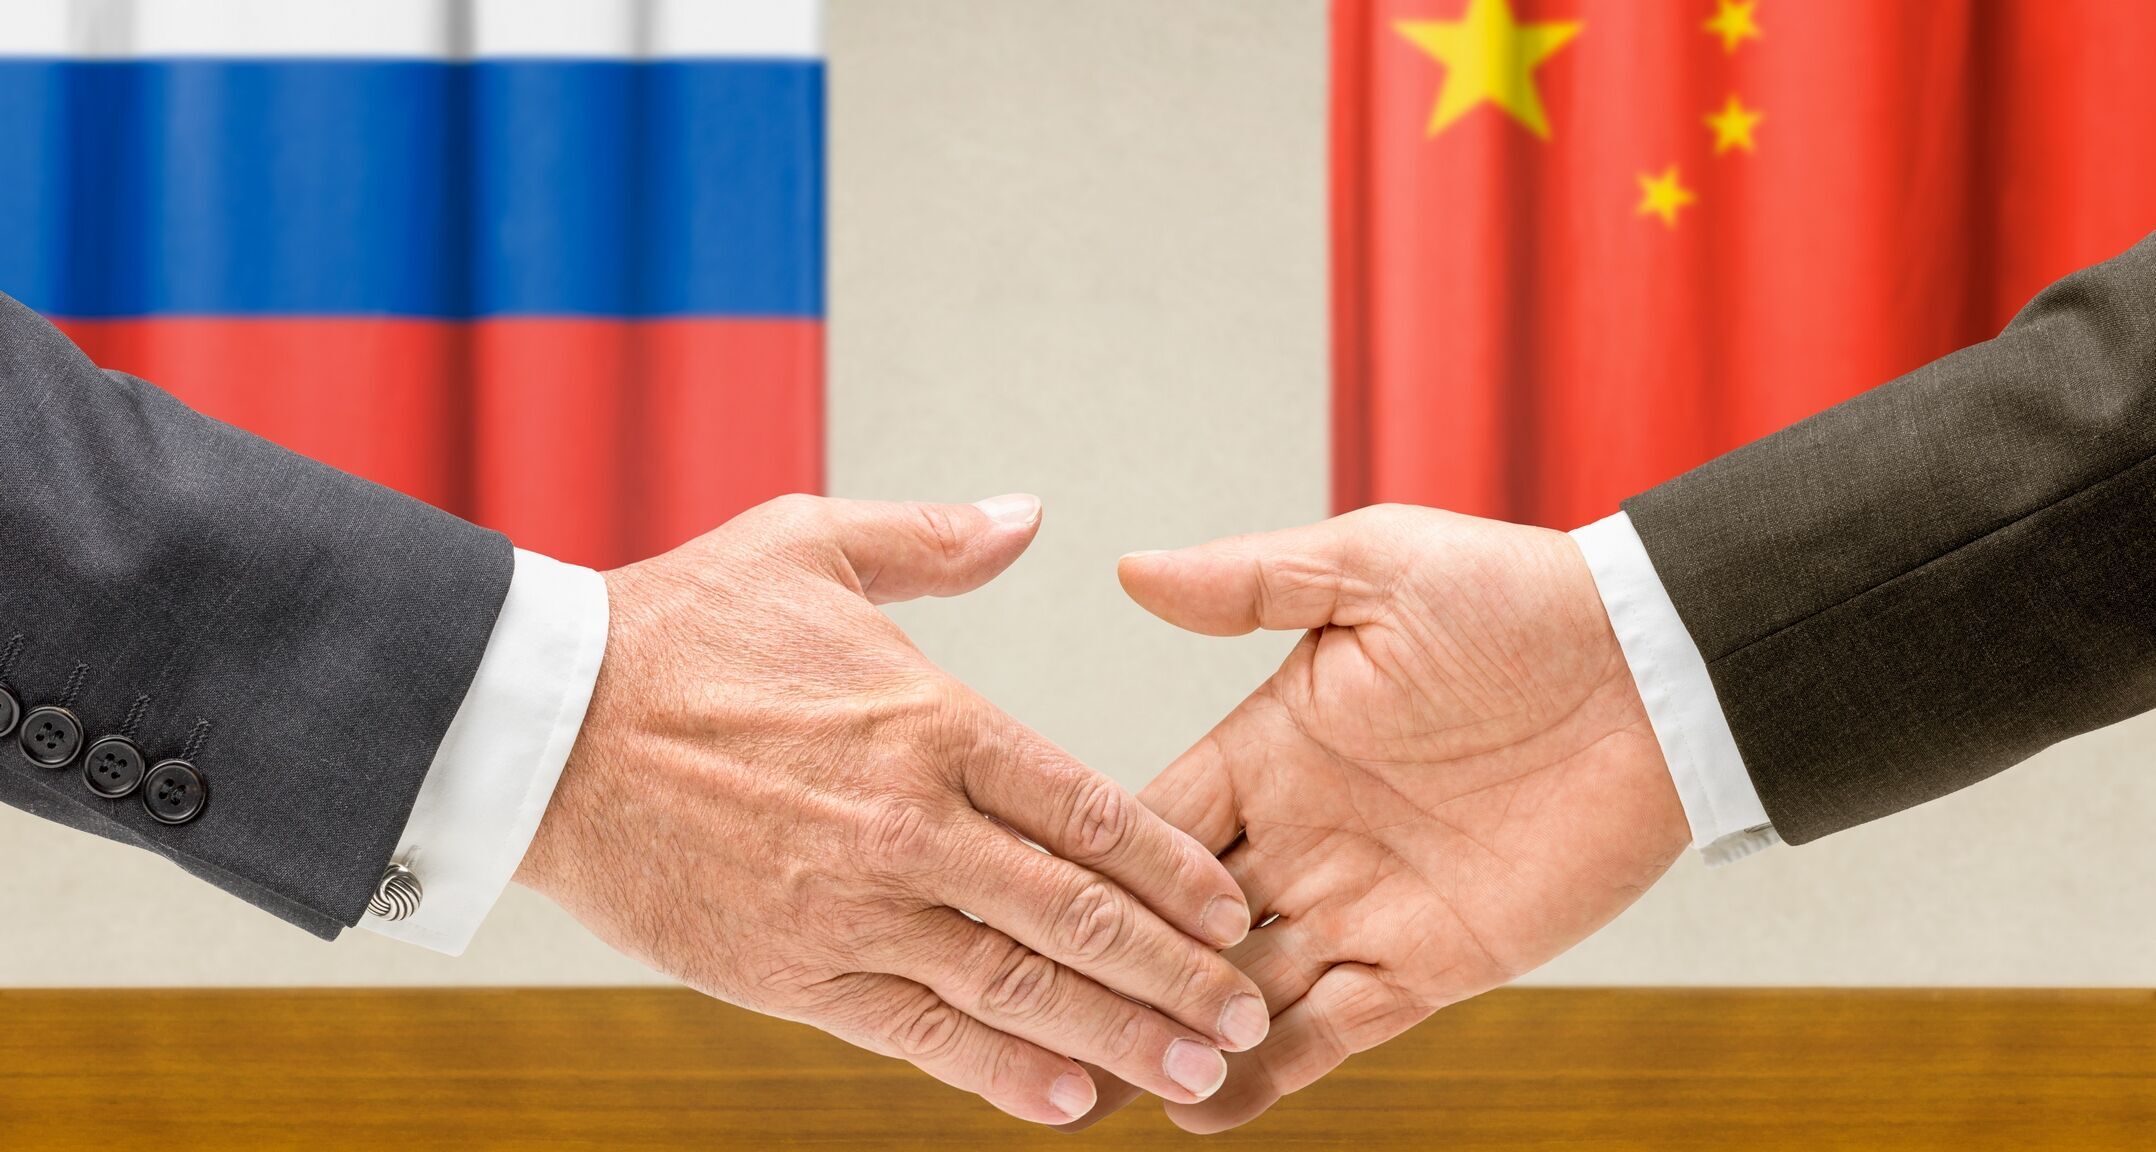 1700亿美元,继成立合资公司后,中俄将签署新的合作订单